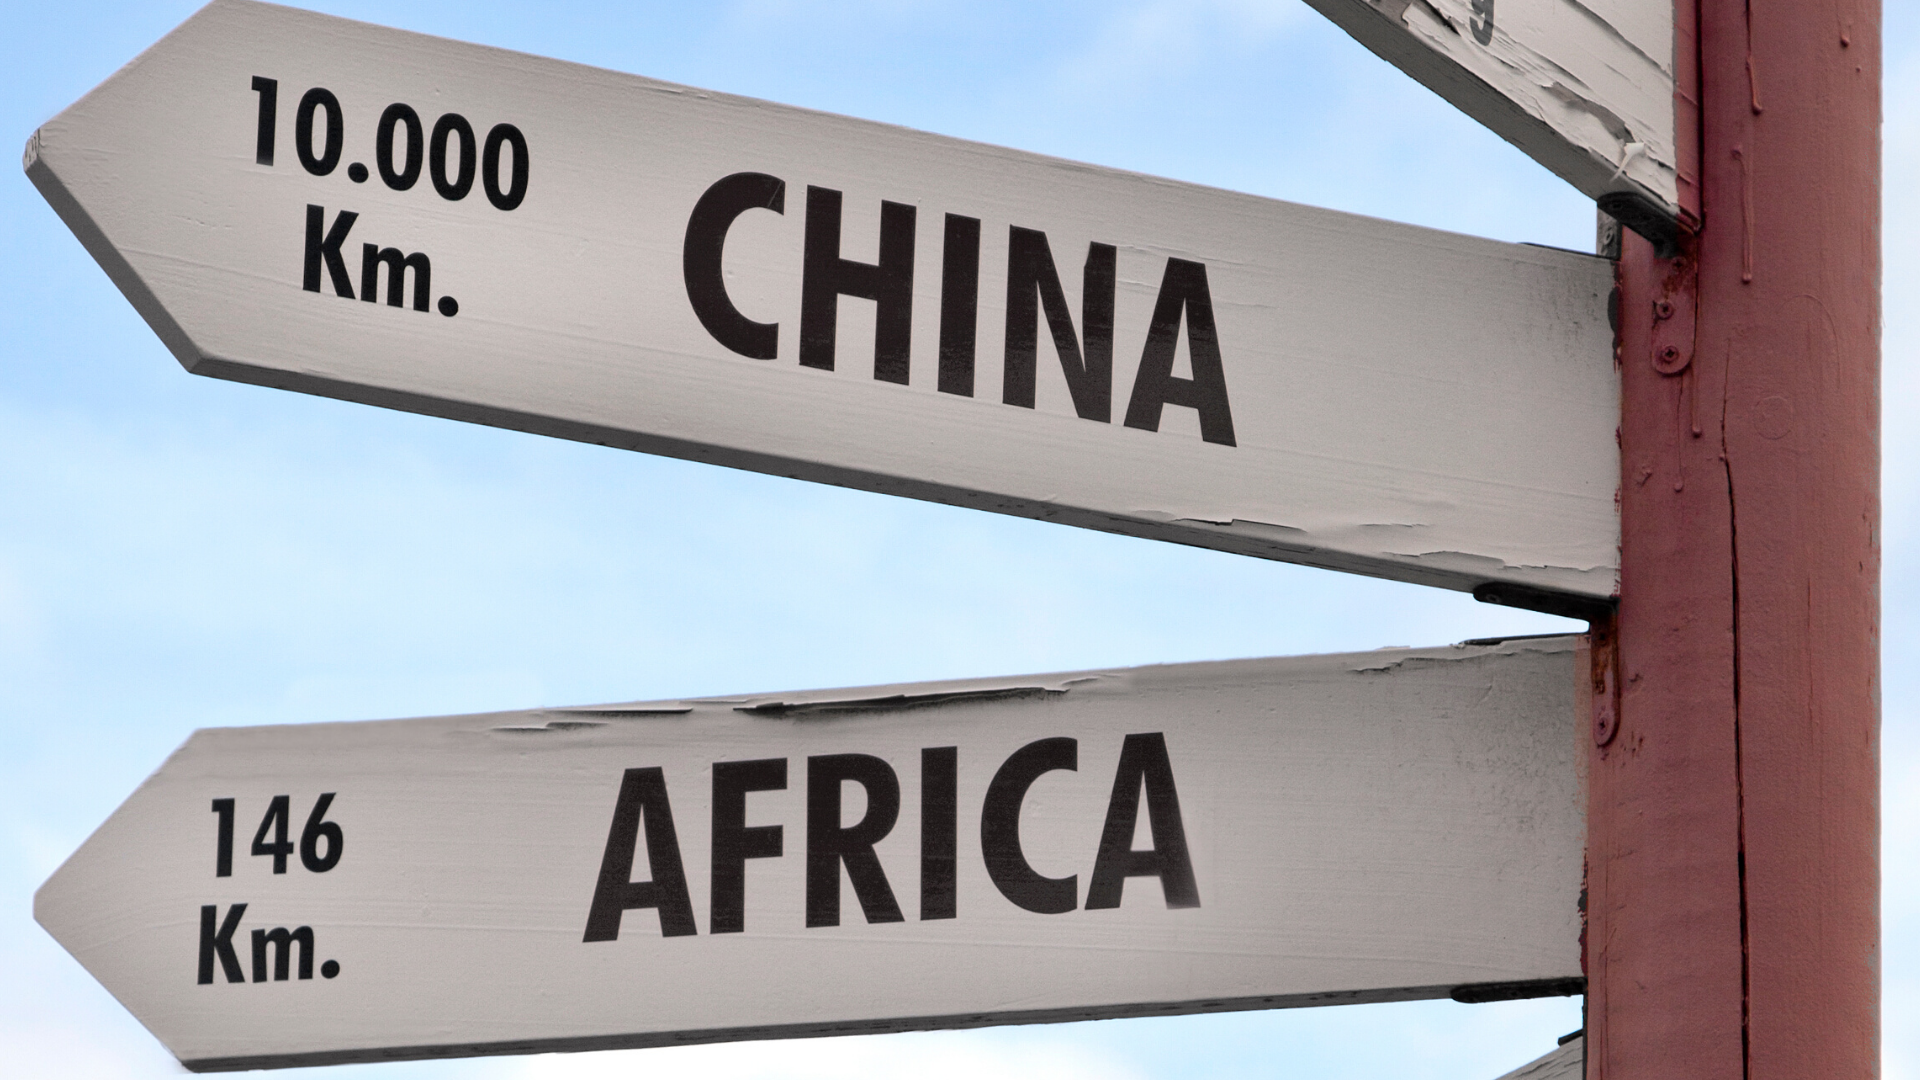 Coopération sino-africaine: création d’un centre d’études sur l’Afrique »  a IASZNU